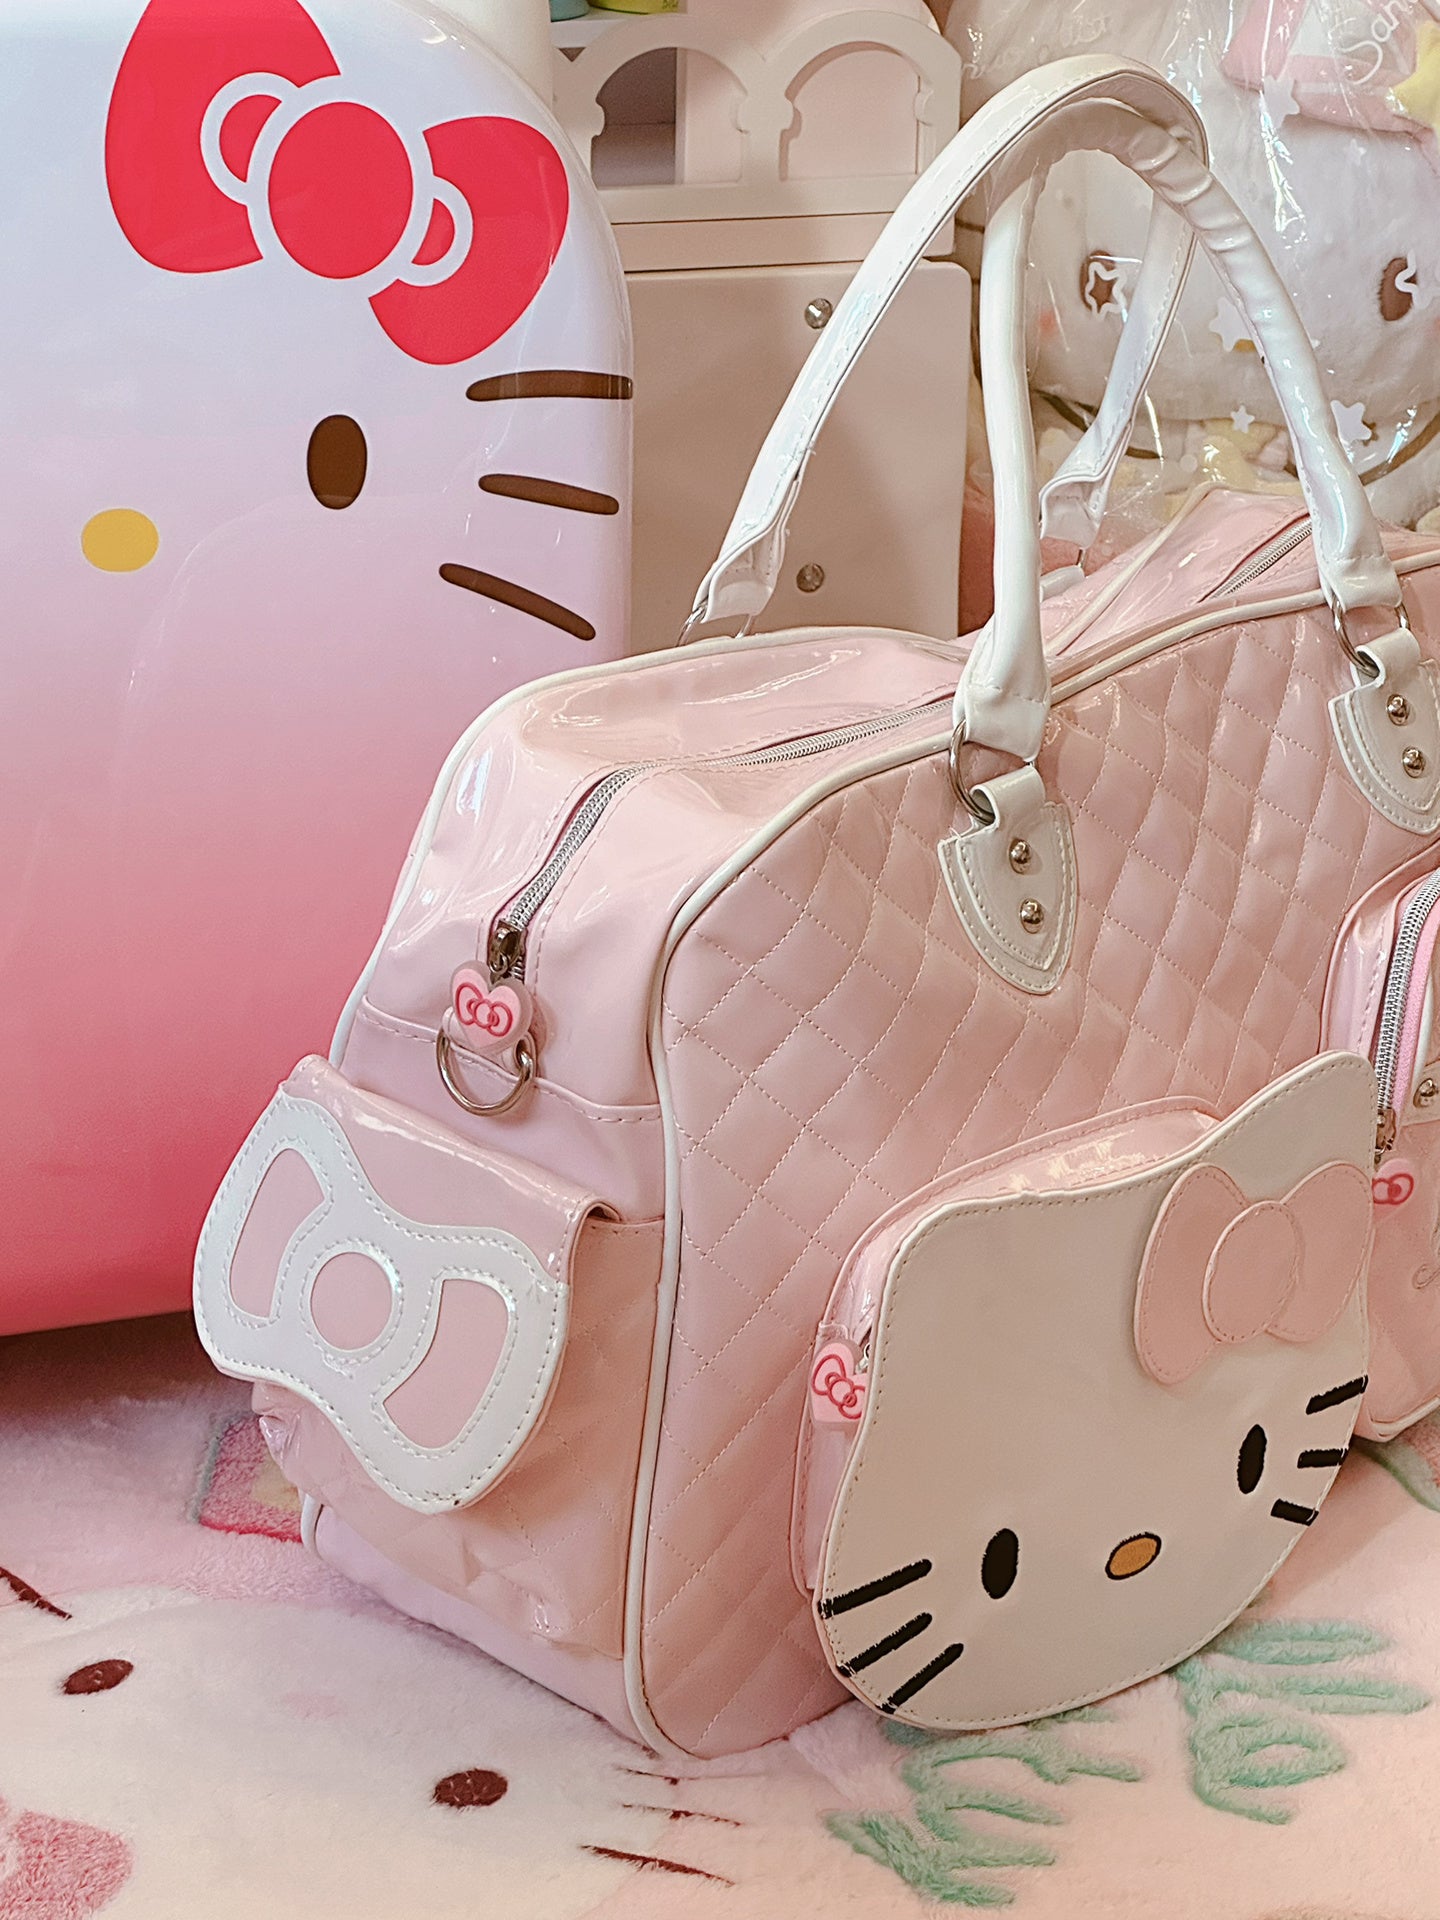 Japan Exclusive Hello Kitty Shopping Bag, Gym Bag, Tote Bag - Sanrio Eco bag